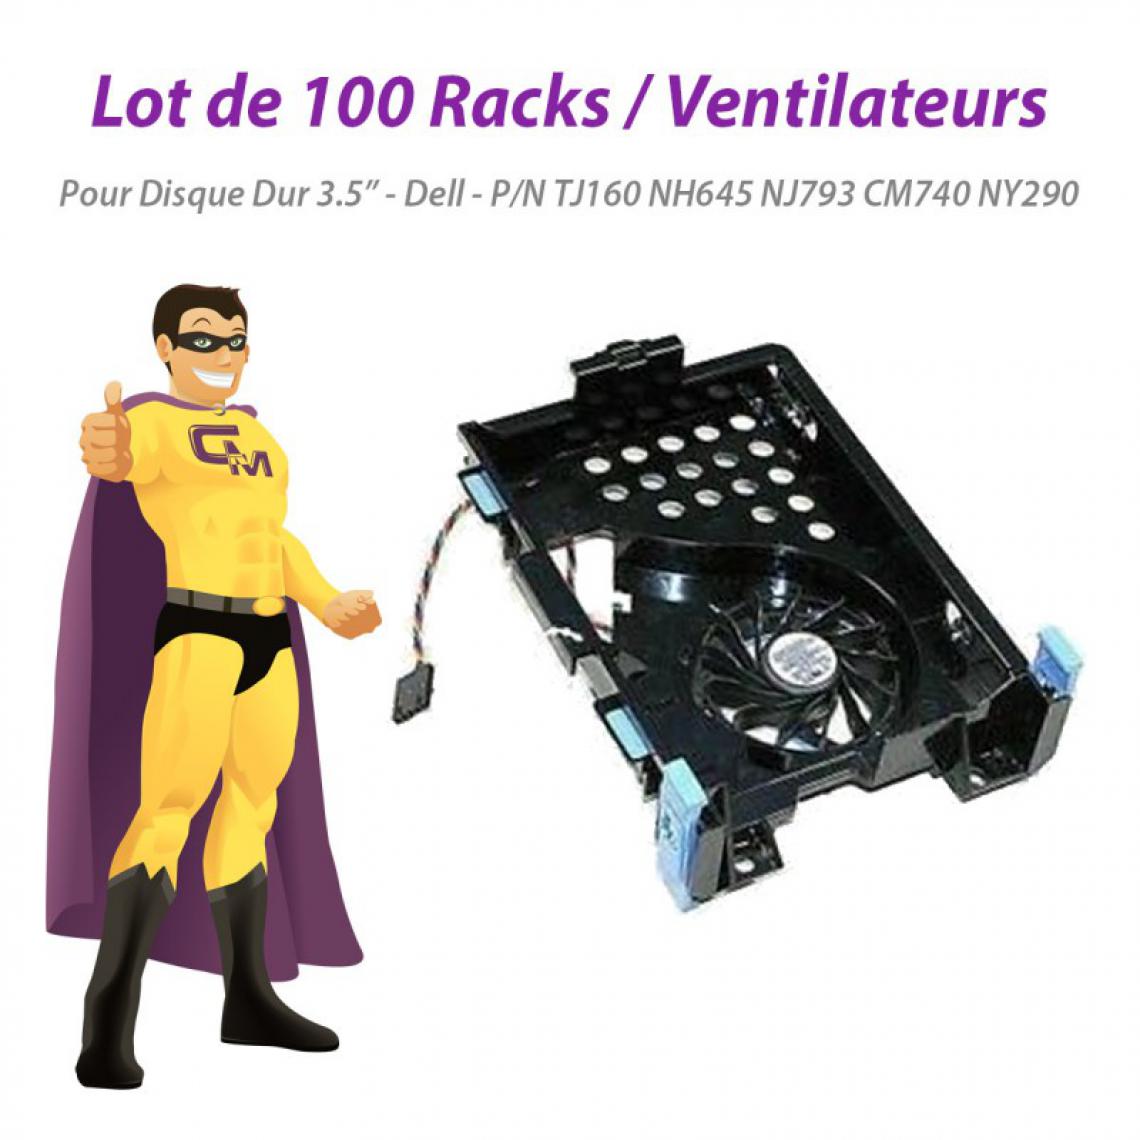 Dell - Lot x100 Racks Ventilateurs Dell 740 755 780 SFF TJ160 NH645 NJ793 CM740 NY290 - Ventilateur Pour Boîtier